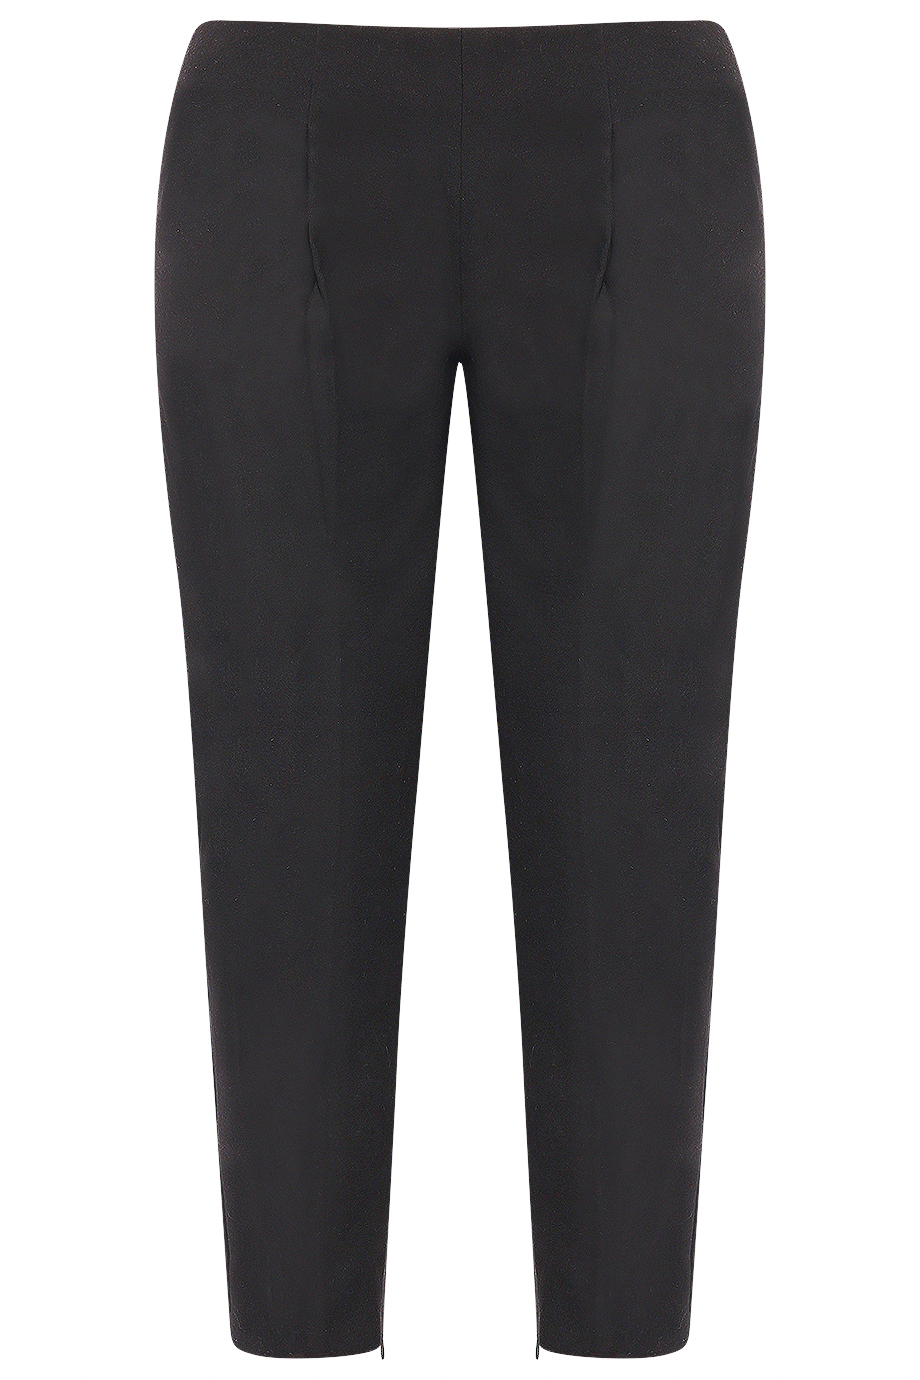 Quần dạ Gabriel Suit pants/ Black